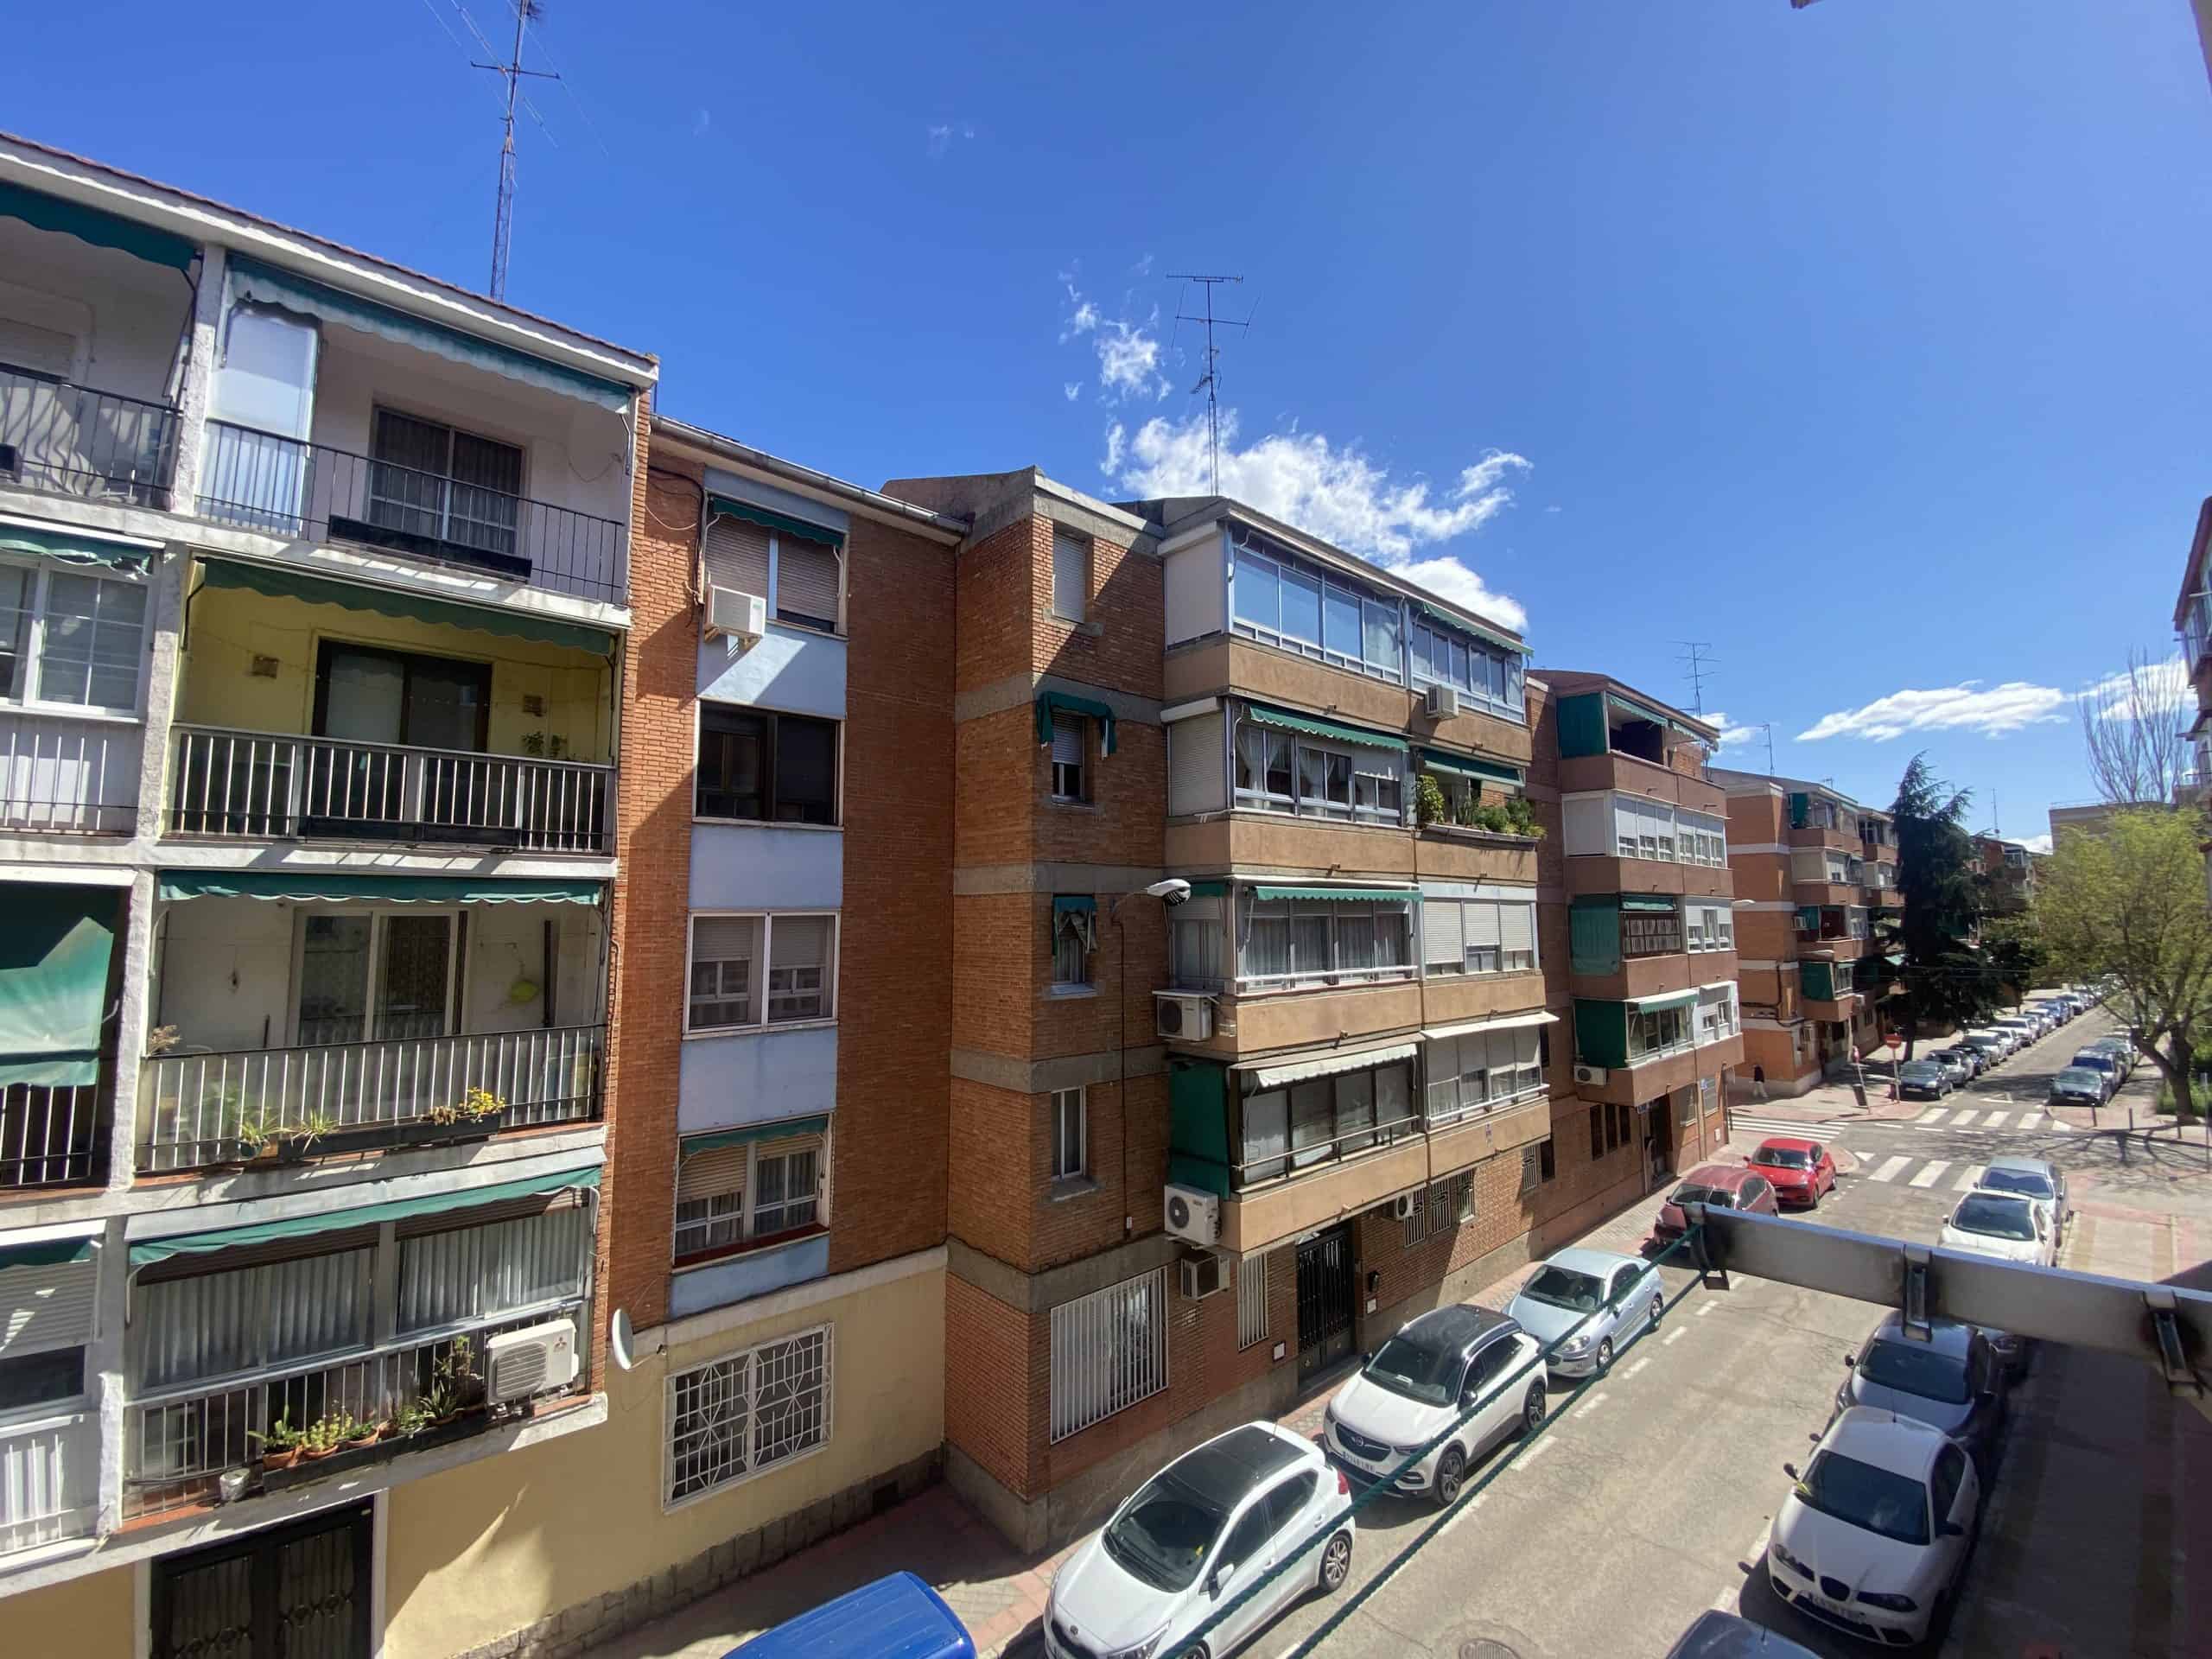 0 FACHADA (1) (Copy) Agencia Inmobiliaria de Madrid-FUTUROCASA-Zona ARGANZUELA-Paseo de los Castellanos, VISTAS